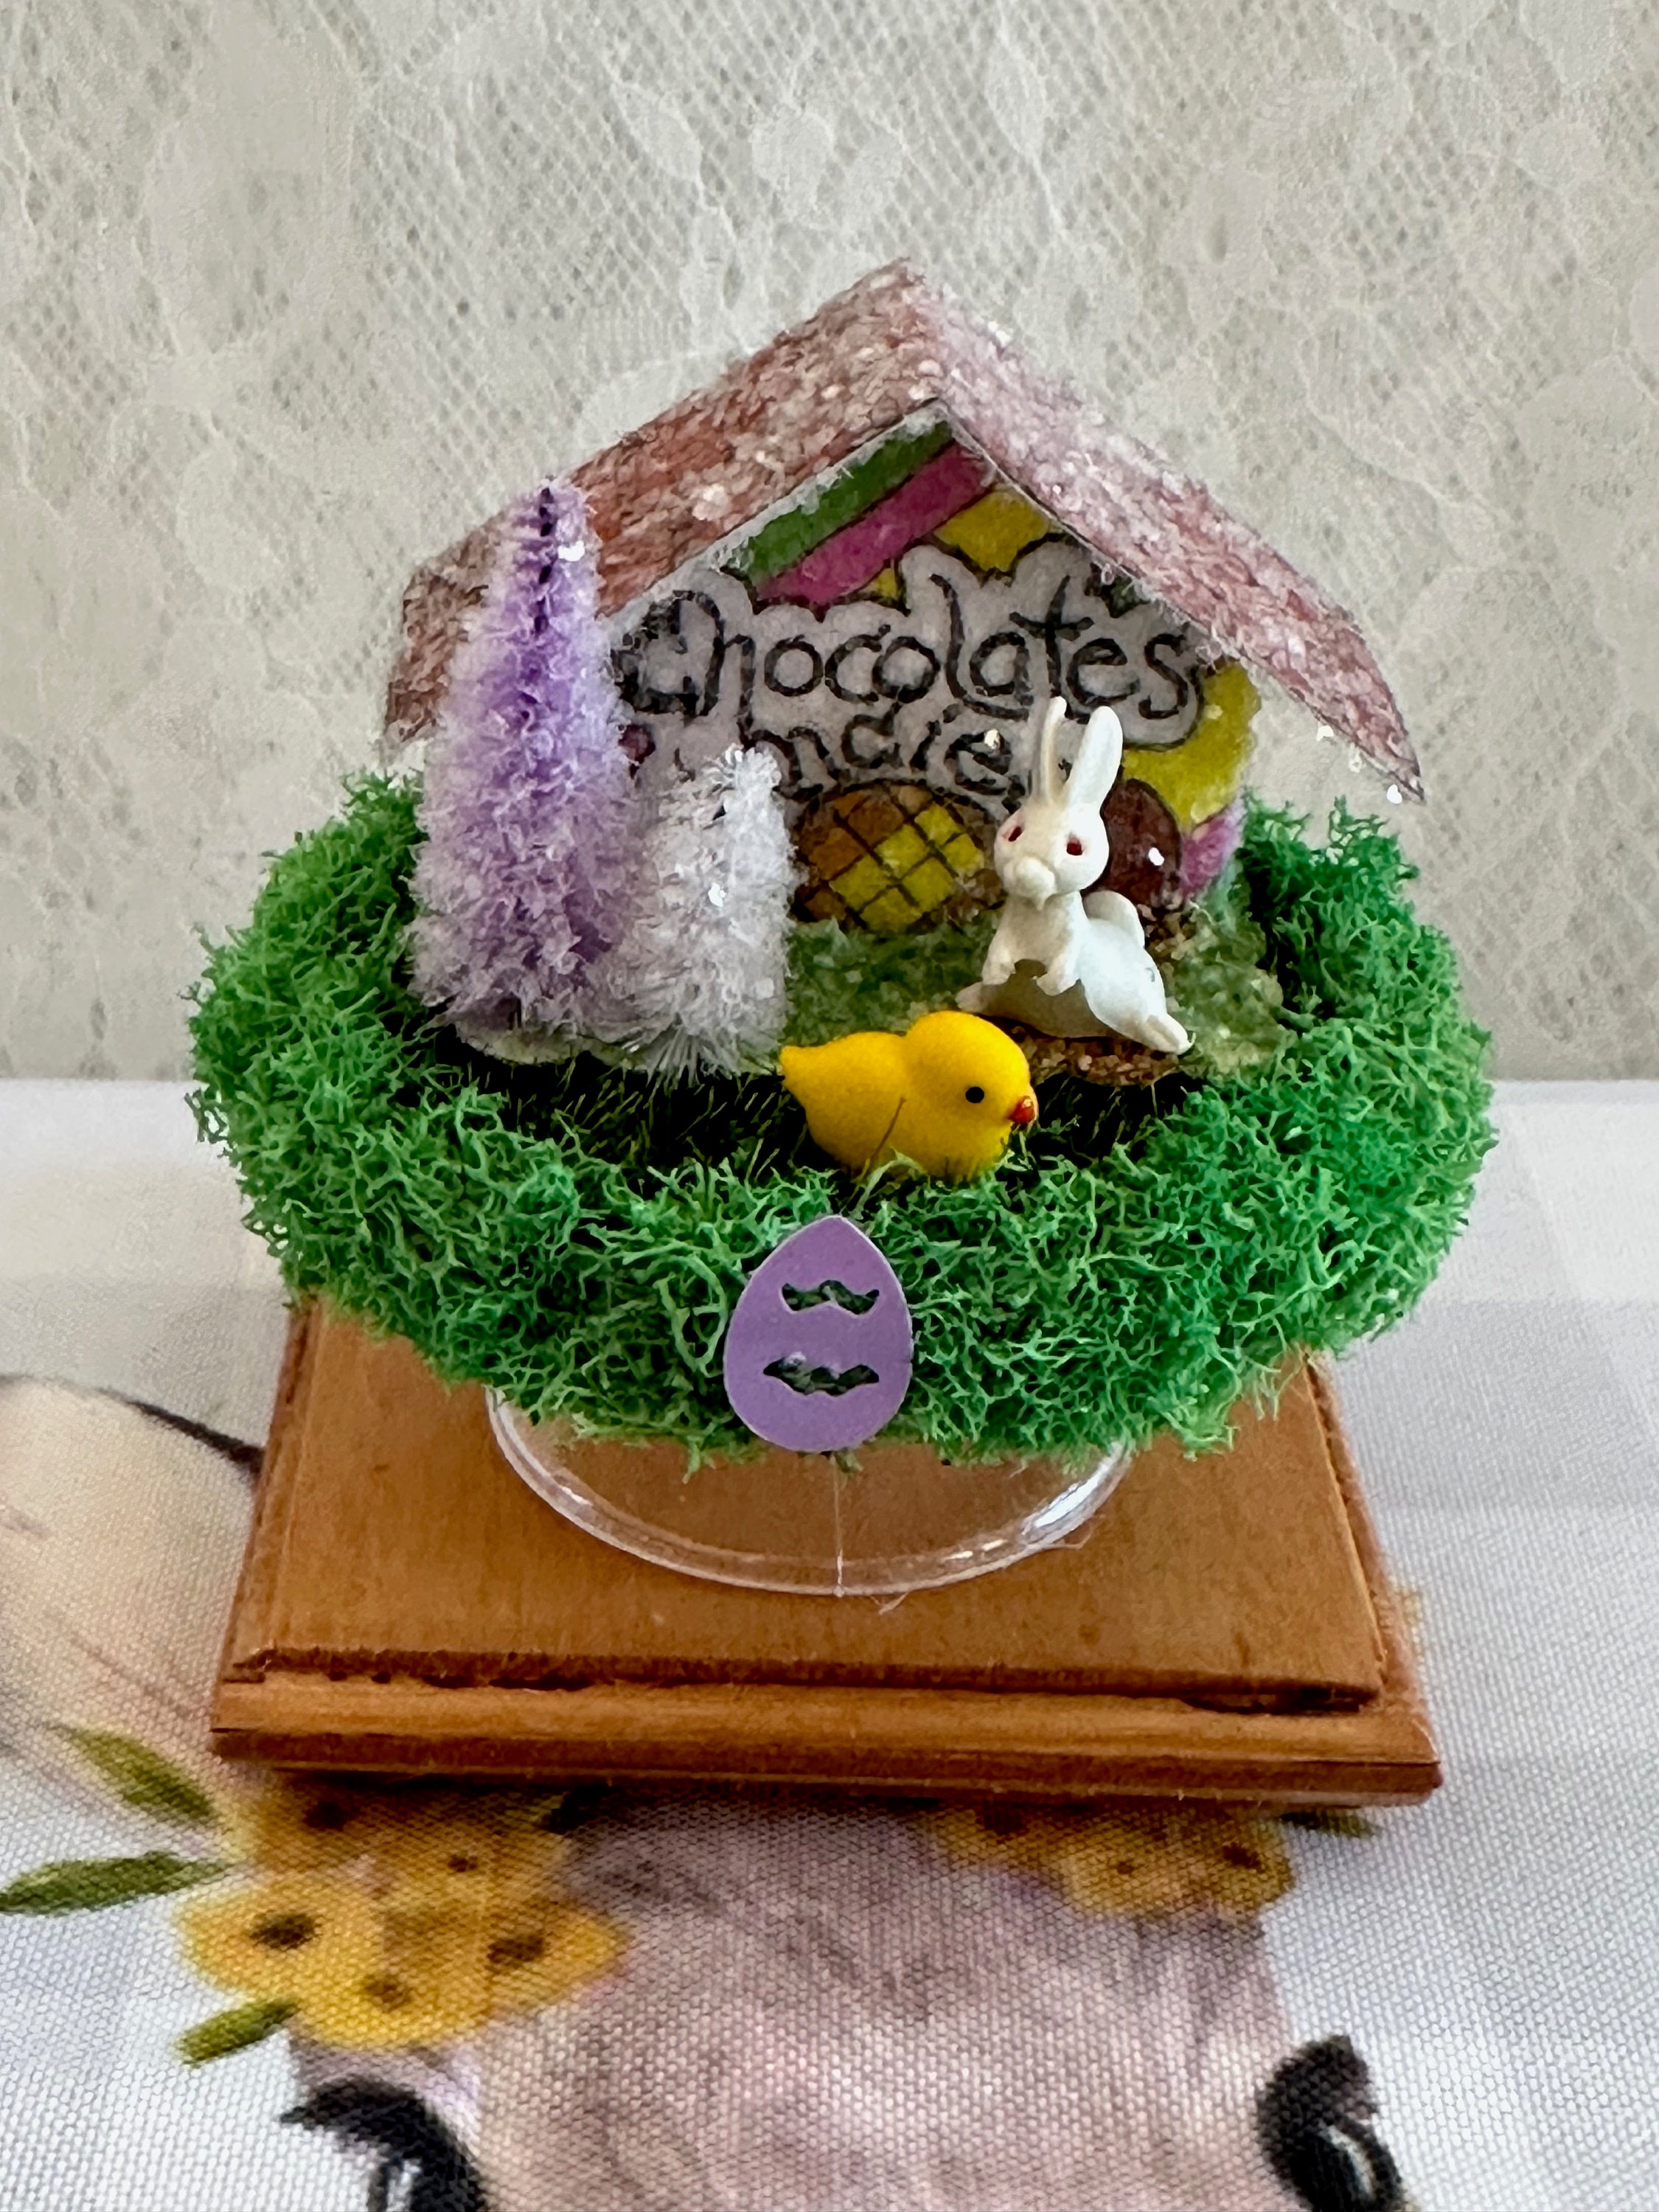 Mini Holo White Easter Grass Basket Filler Spring Fairy Garden